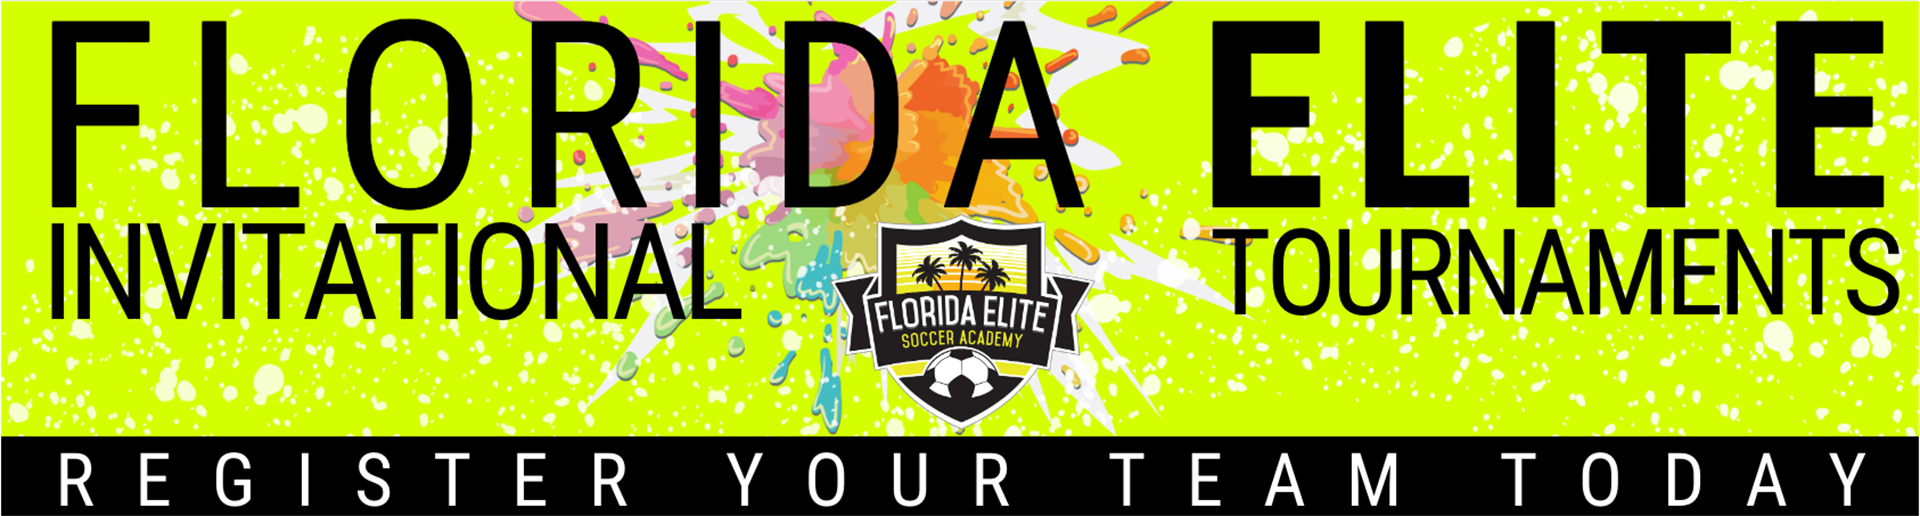 FLORIDA ELITE INVITATIONAL tournaments